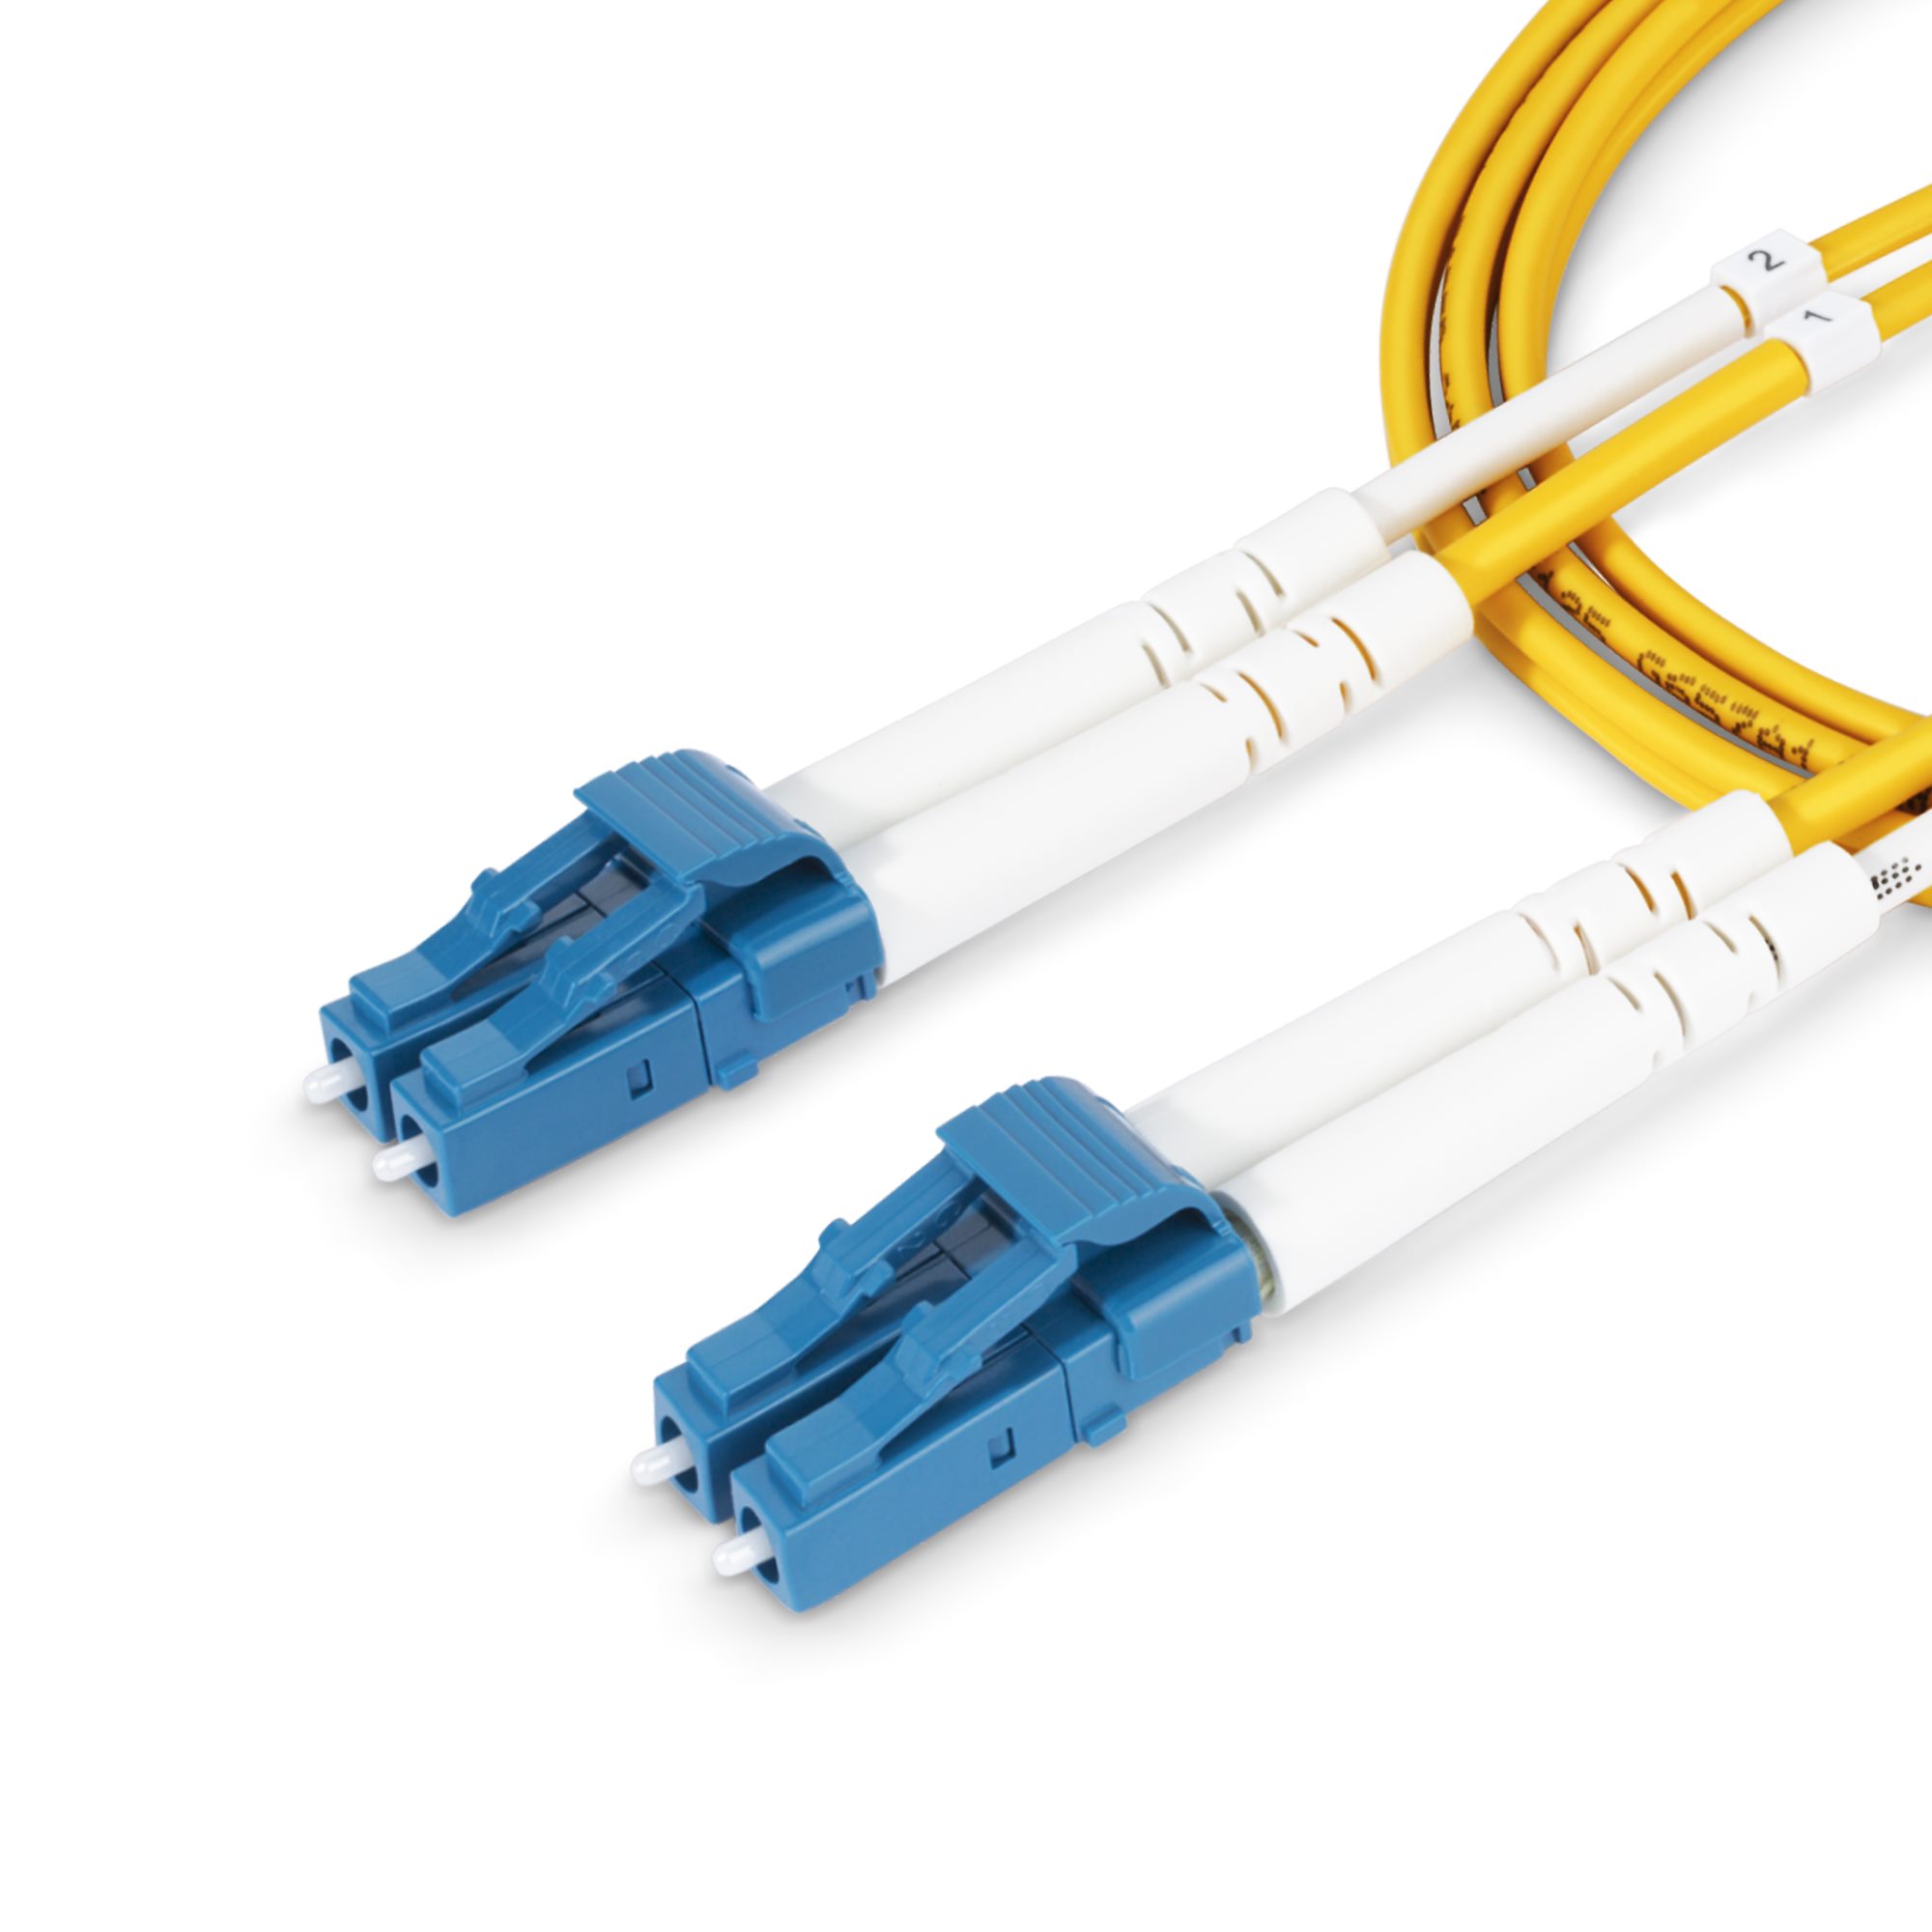 SMDOS2LCLC15M Cable De Fibra Optica Lc A Lc Upc  Os2 Monomodo De 15M UPC 0065030901772